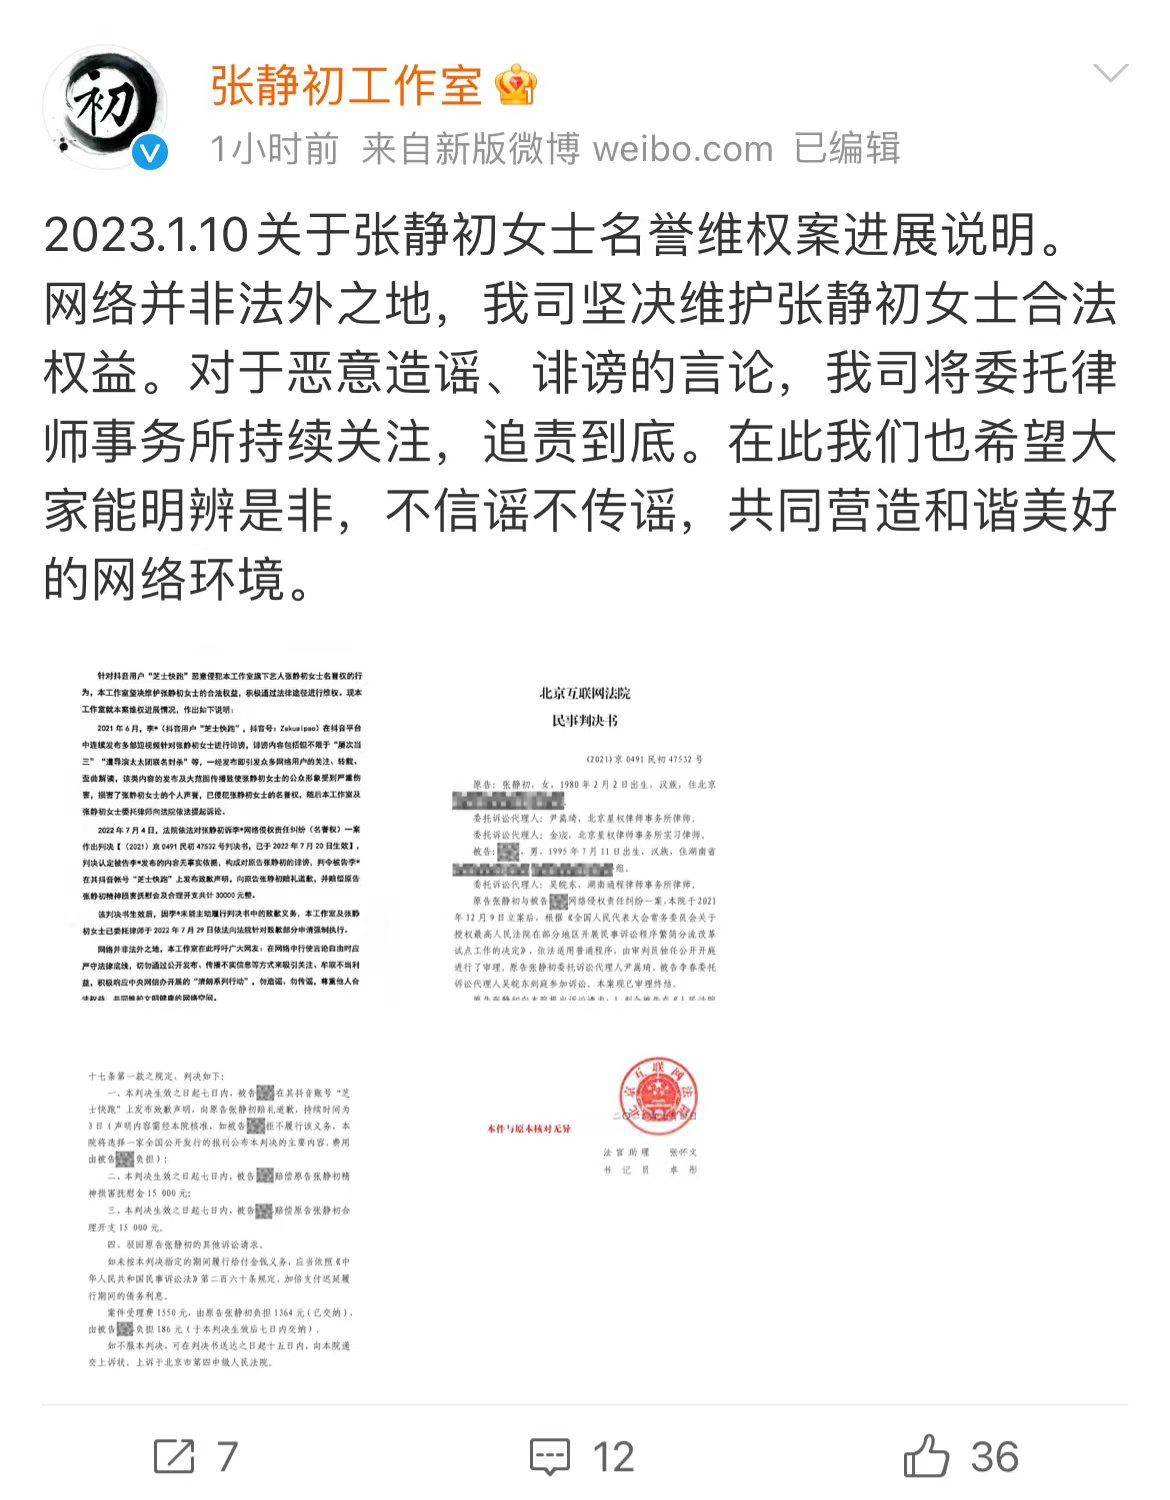 张静初工作室发布名誉维权案说明 被告需公开道歉